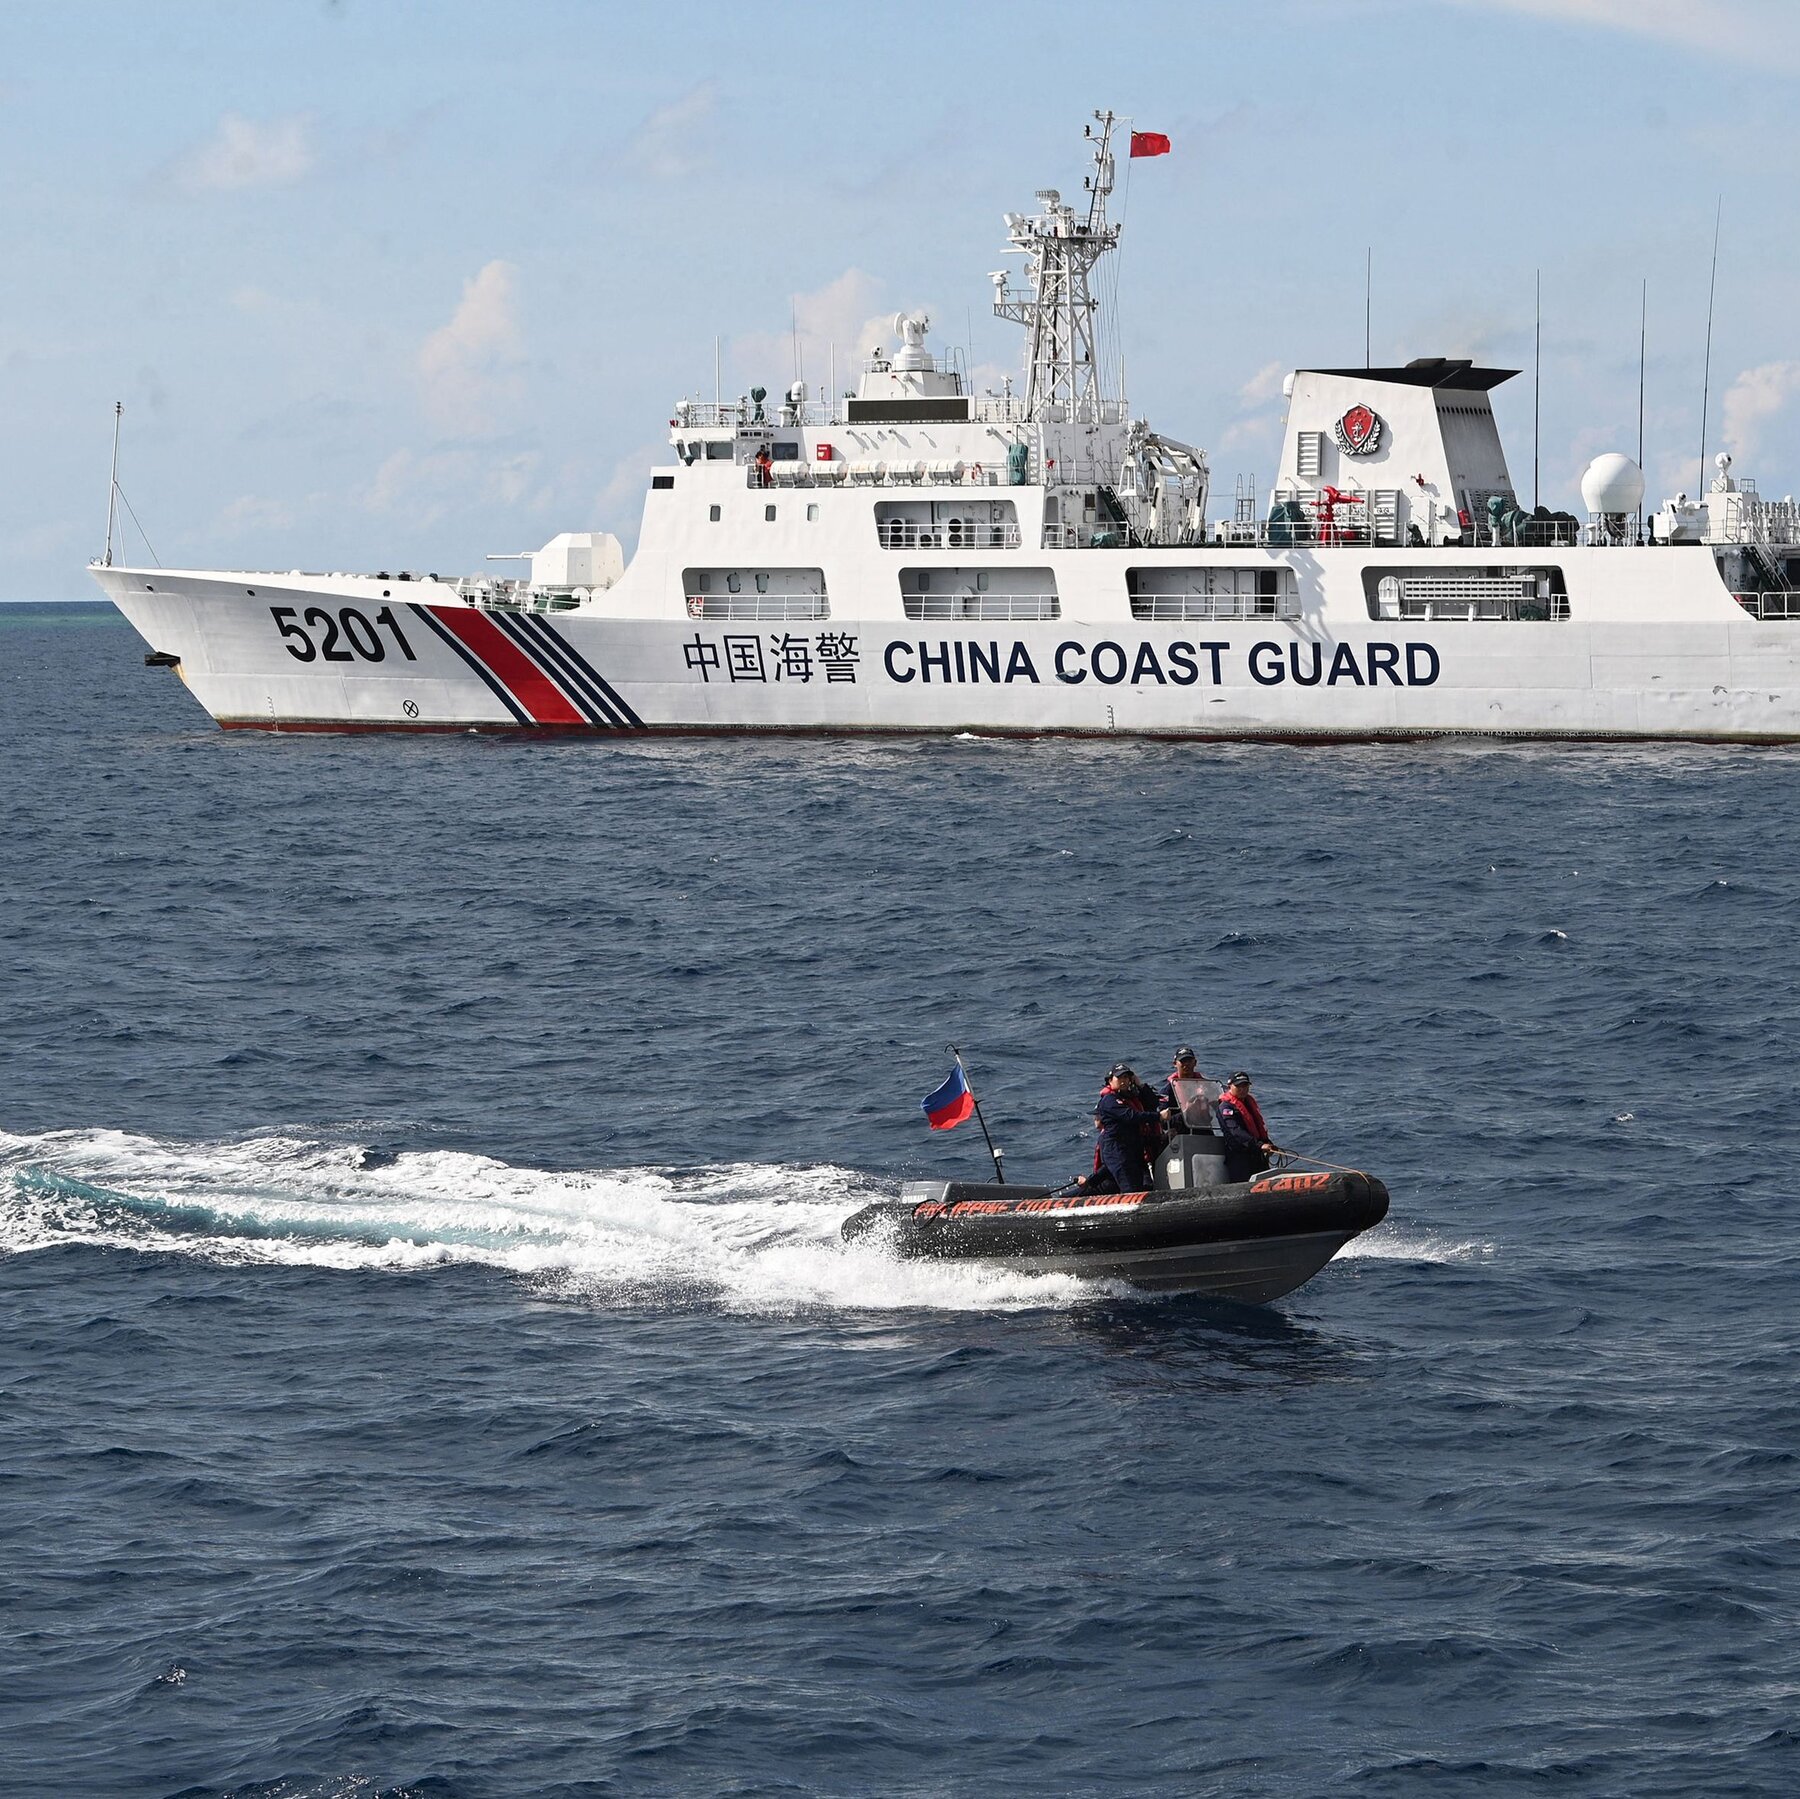 La Guardia Costiera di Pechino forza le regole nel Mar Cinese